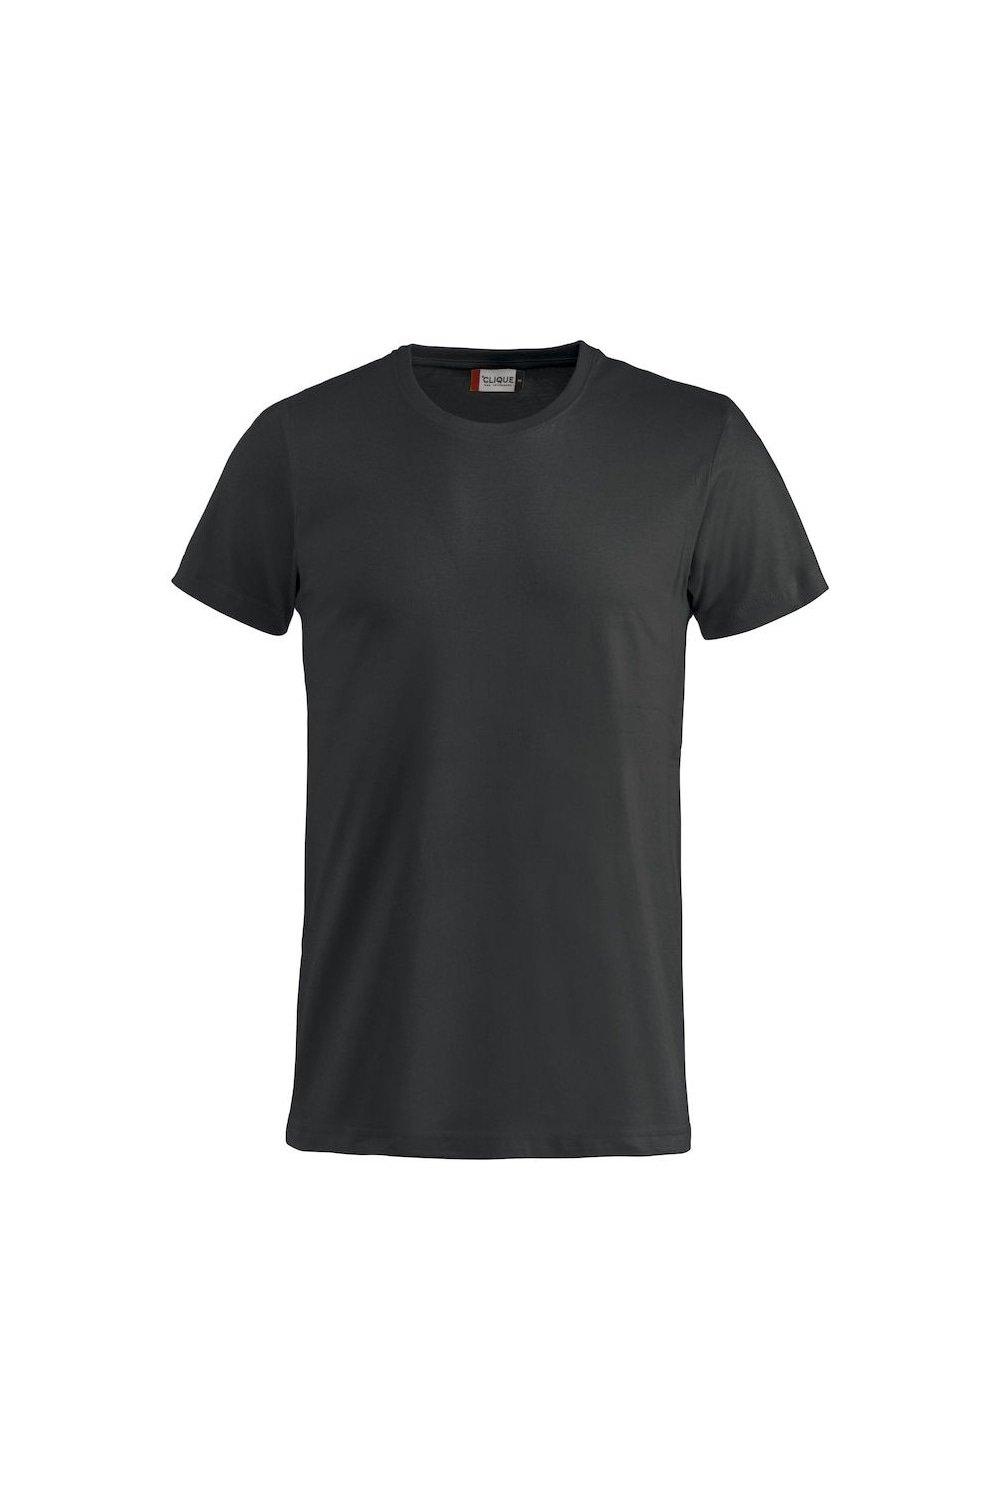 Базовая футболка Clique, черный